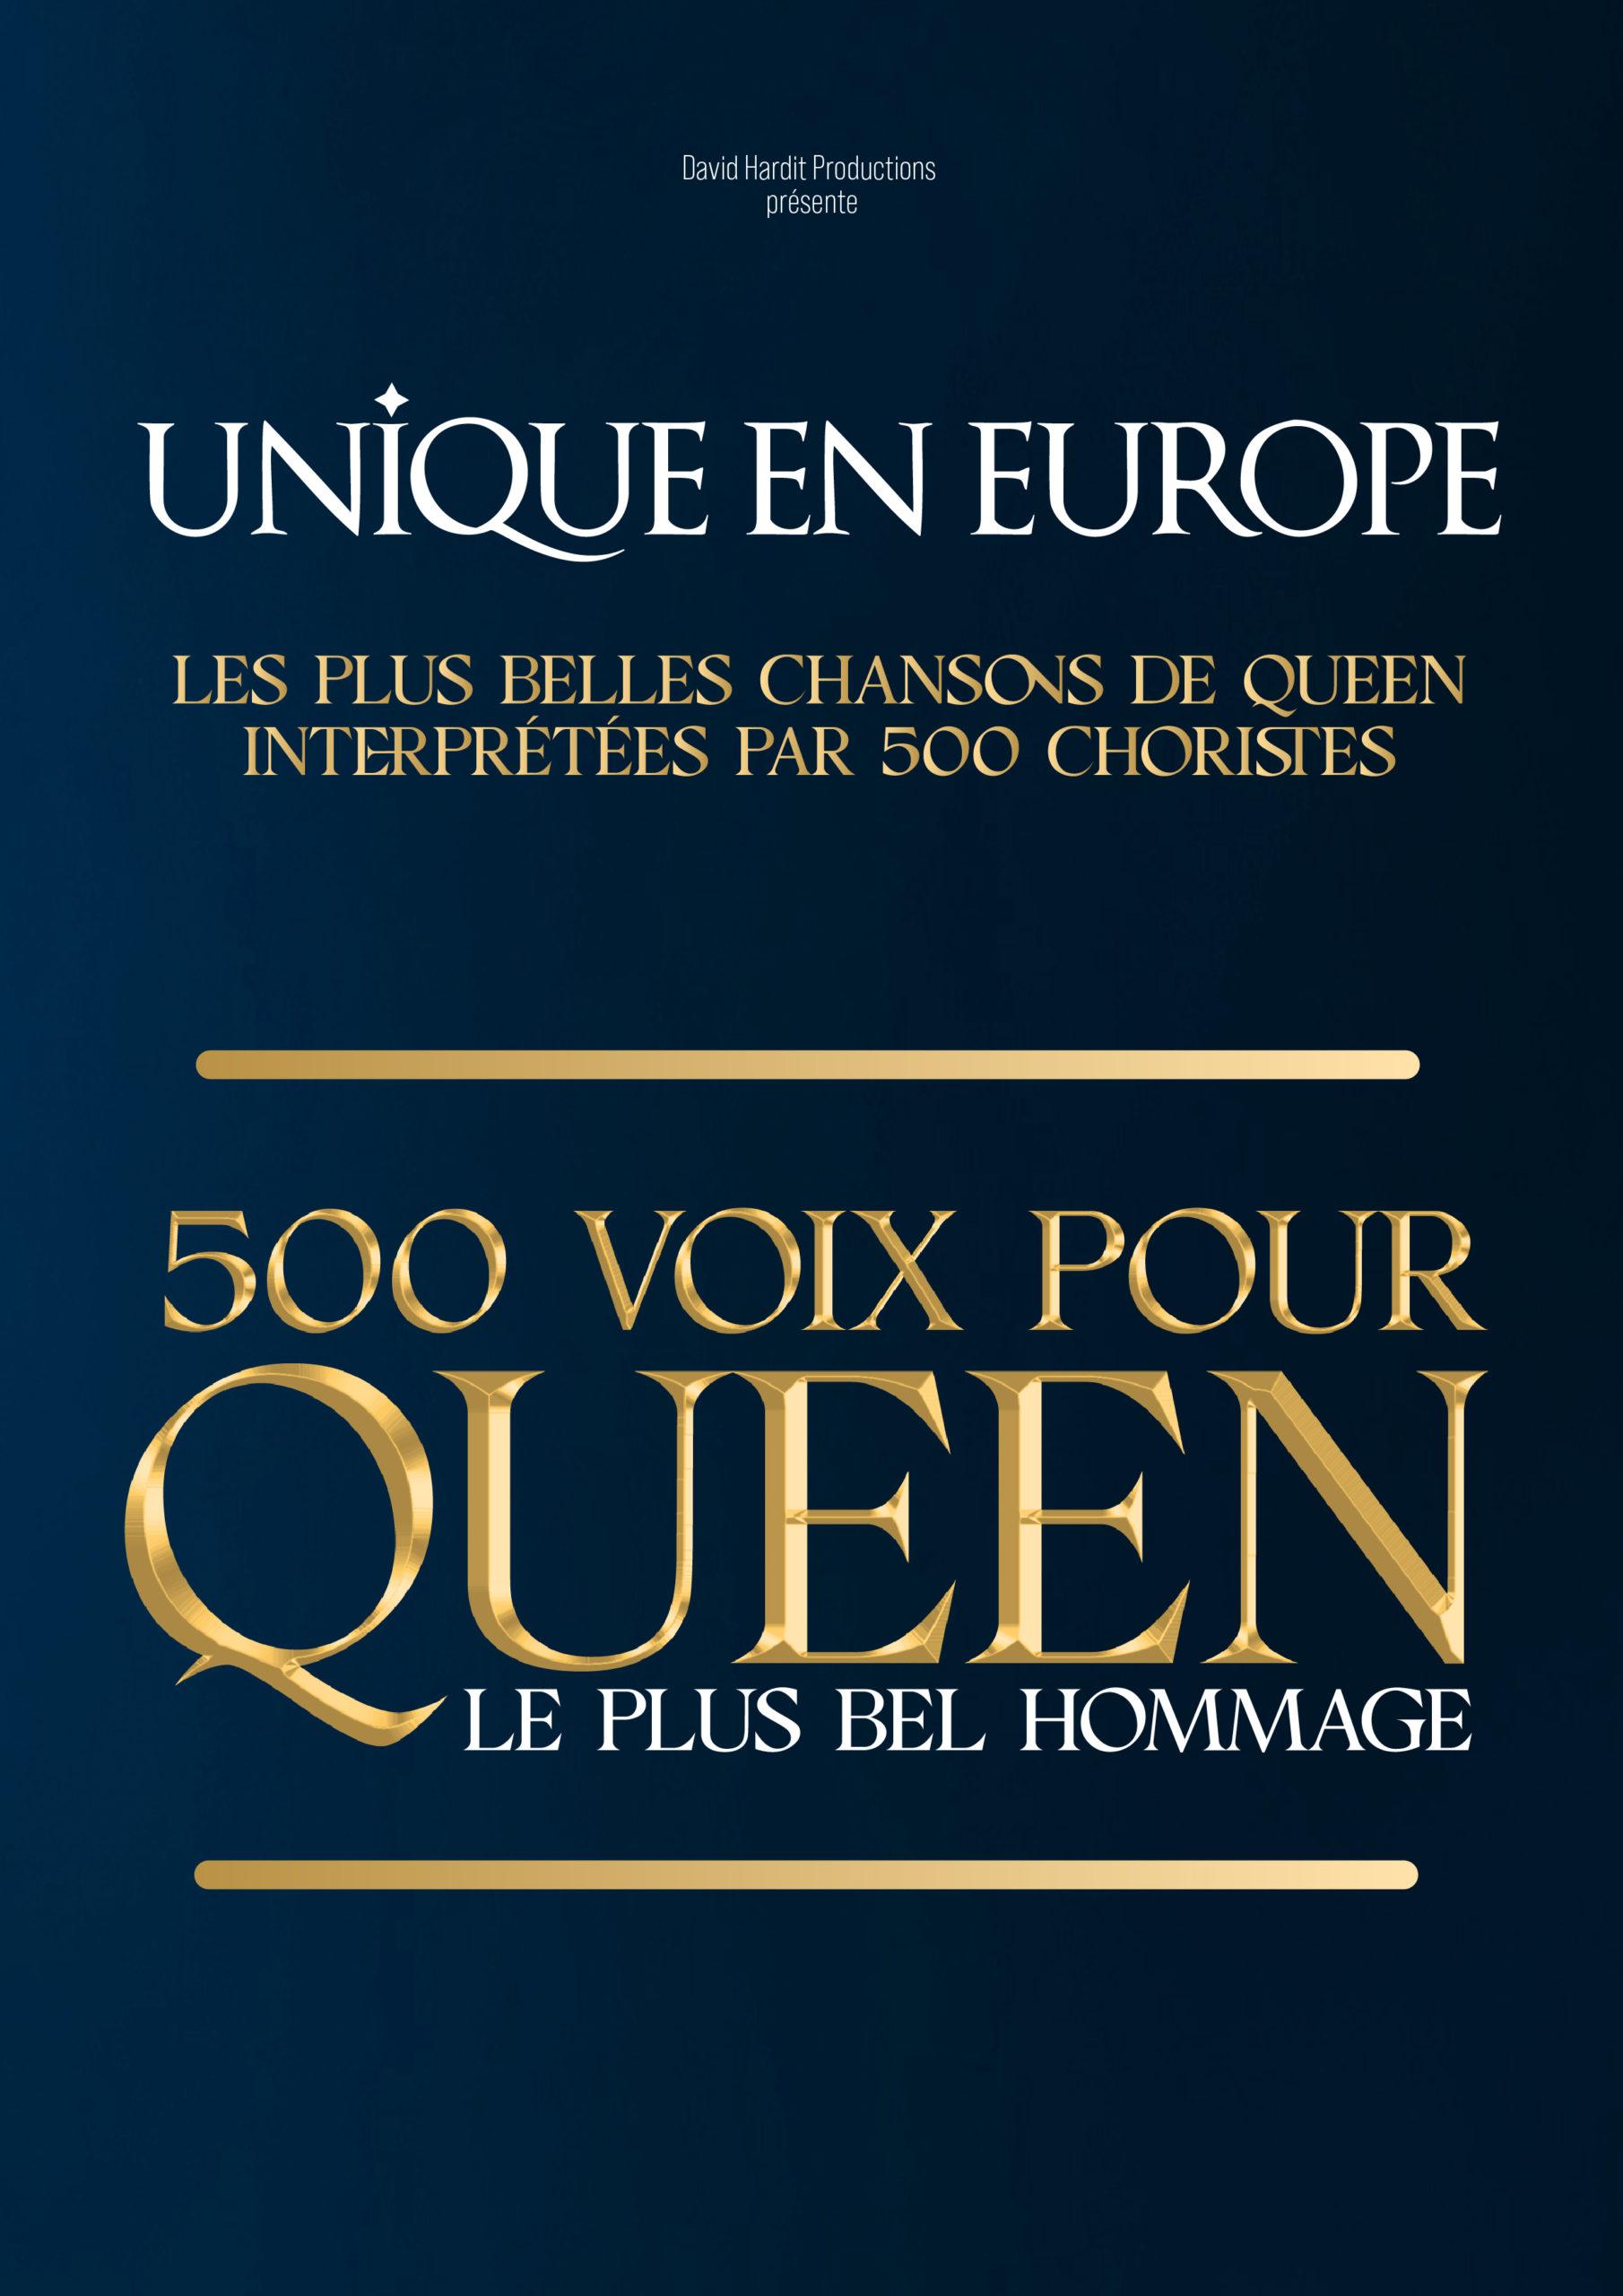 500 voix pour queen - Dôme de Paris - Paris (75)